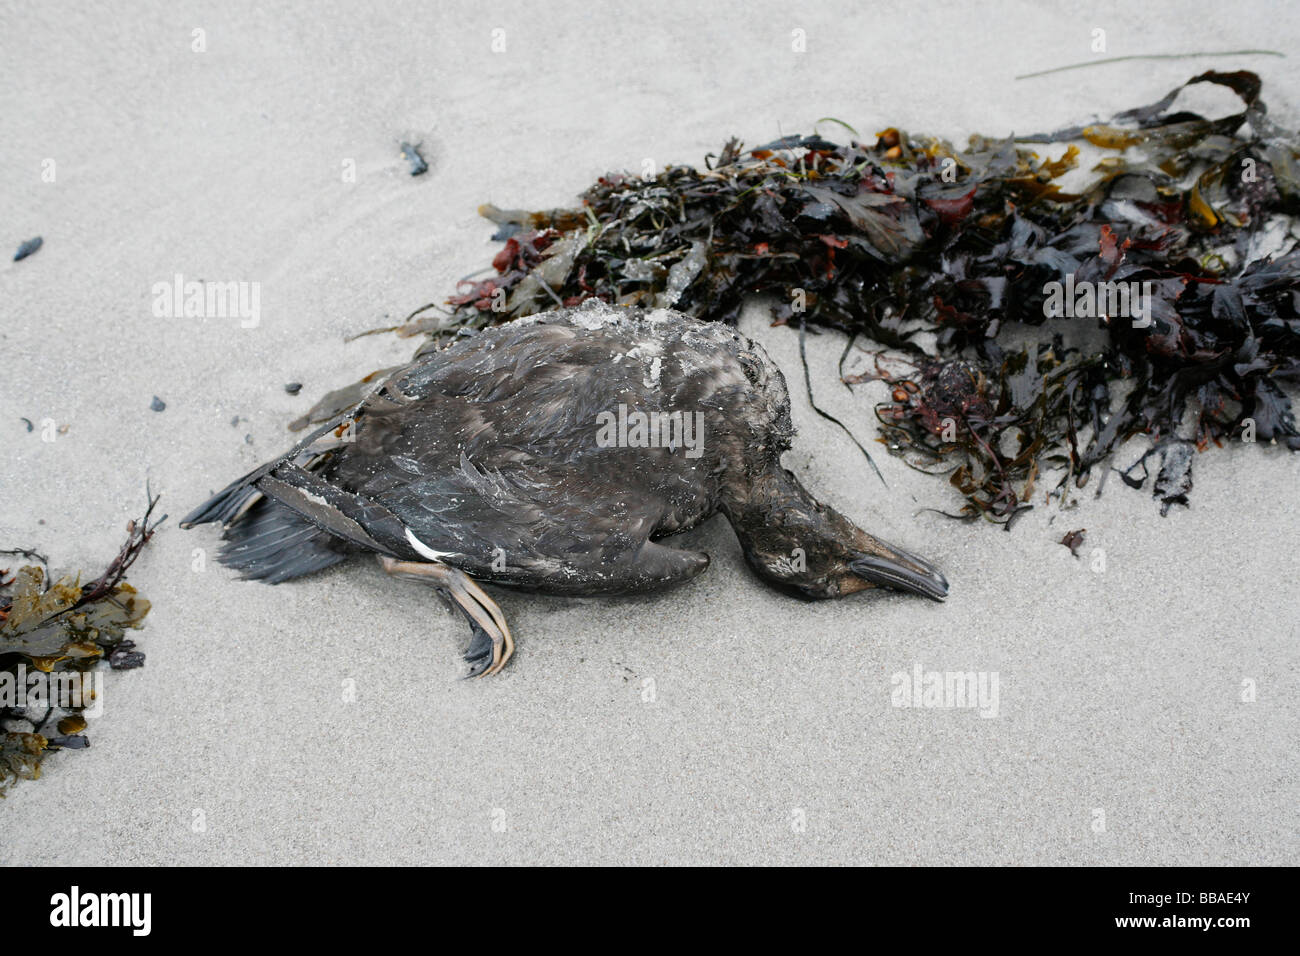 A dead duck on a beach Stock Photo